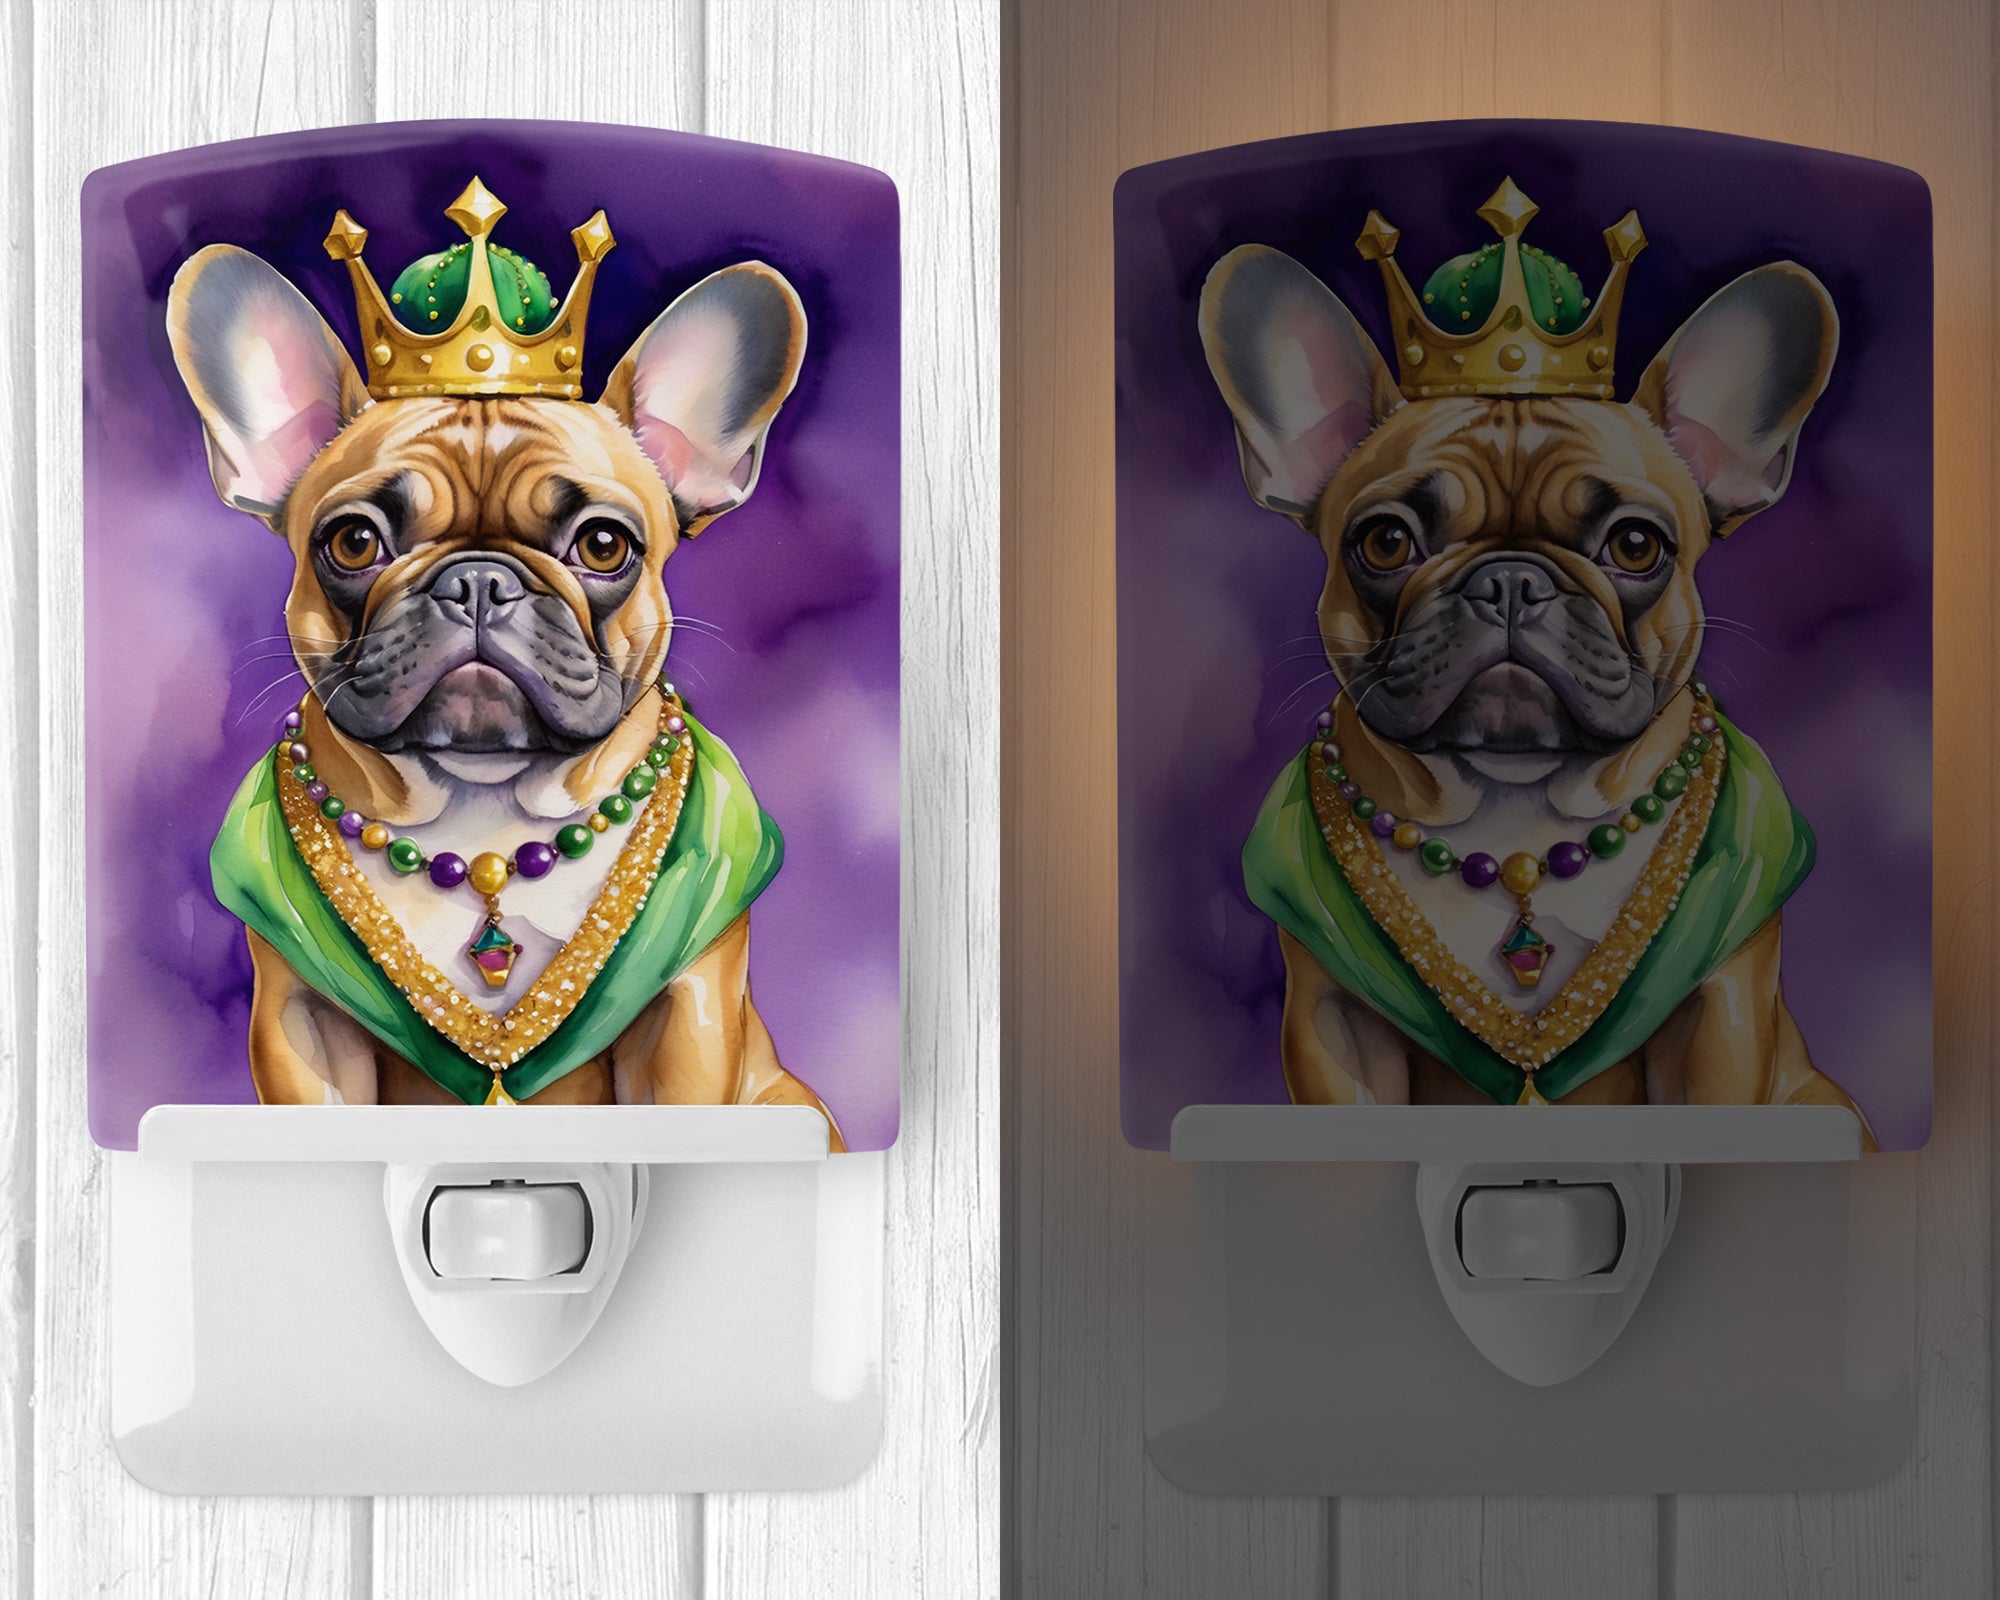 French Bulldog King of Mardi Gras Ceramic Night Light